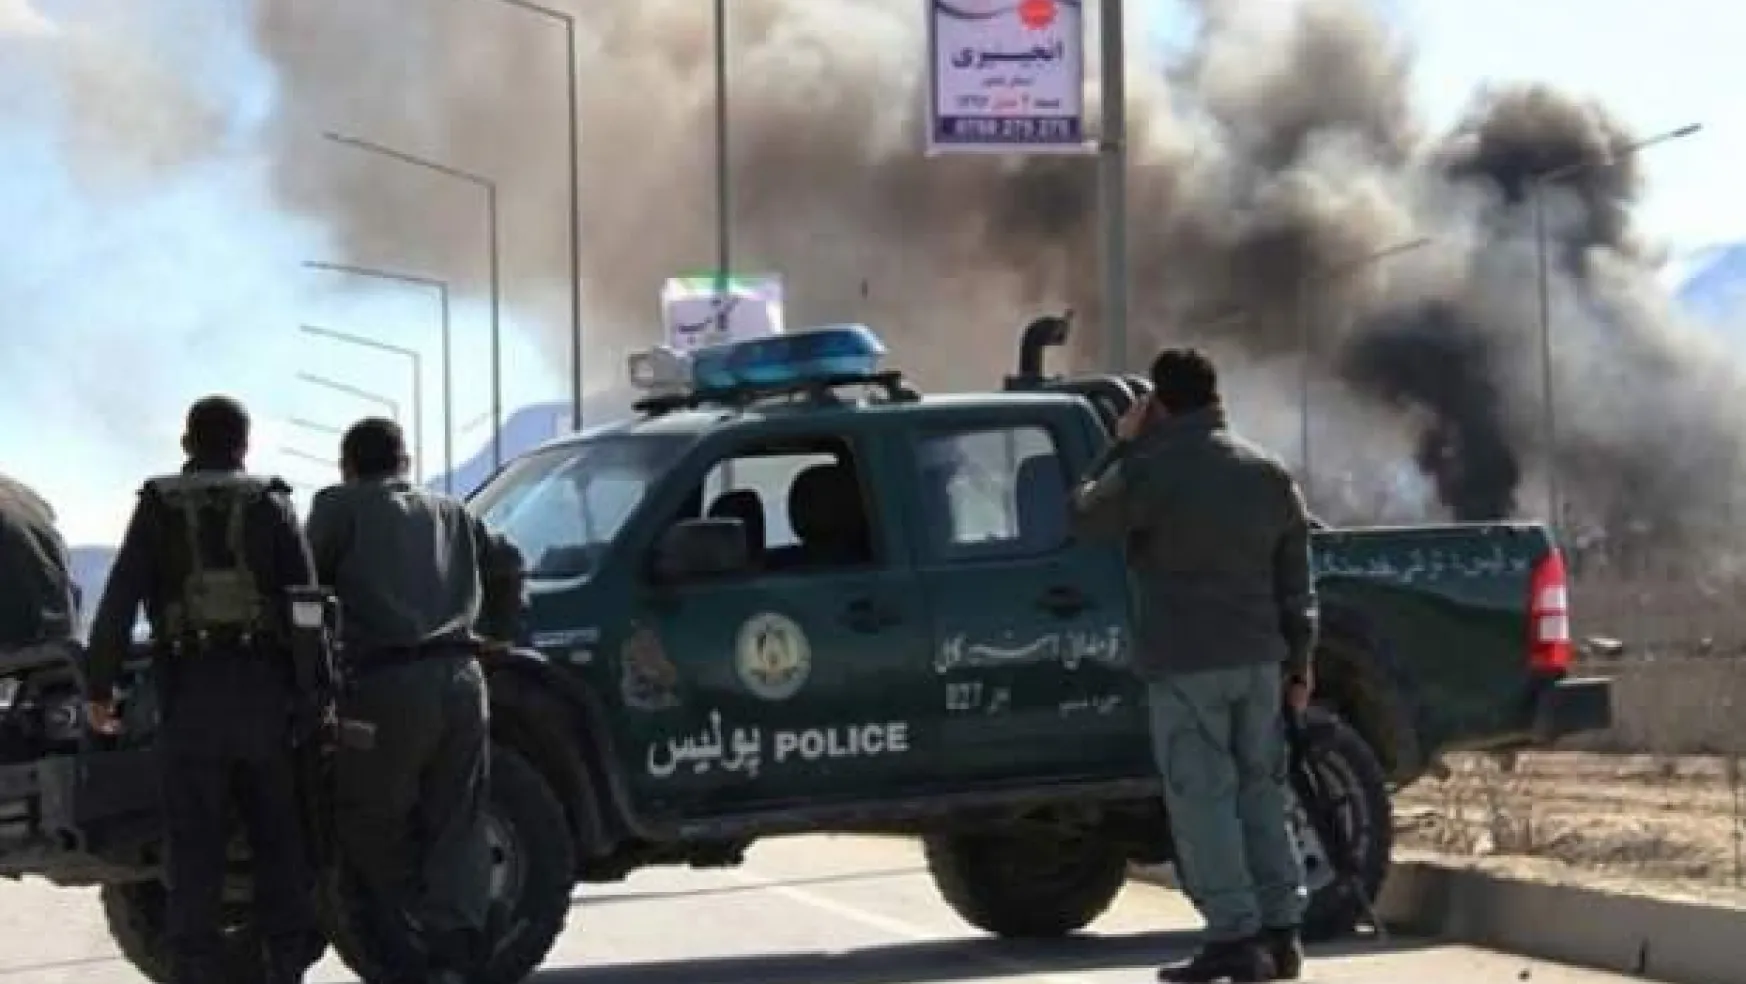 Afganistan'da bomba yüklü araçla saldırı: 15 ölü